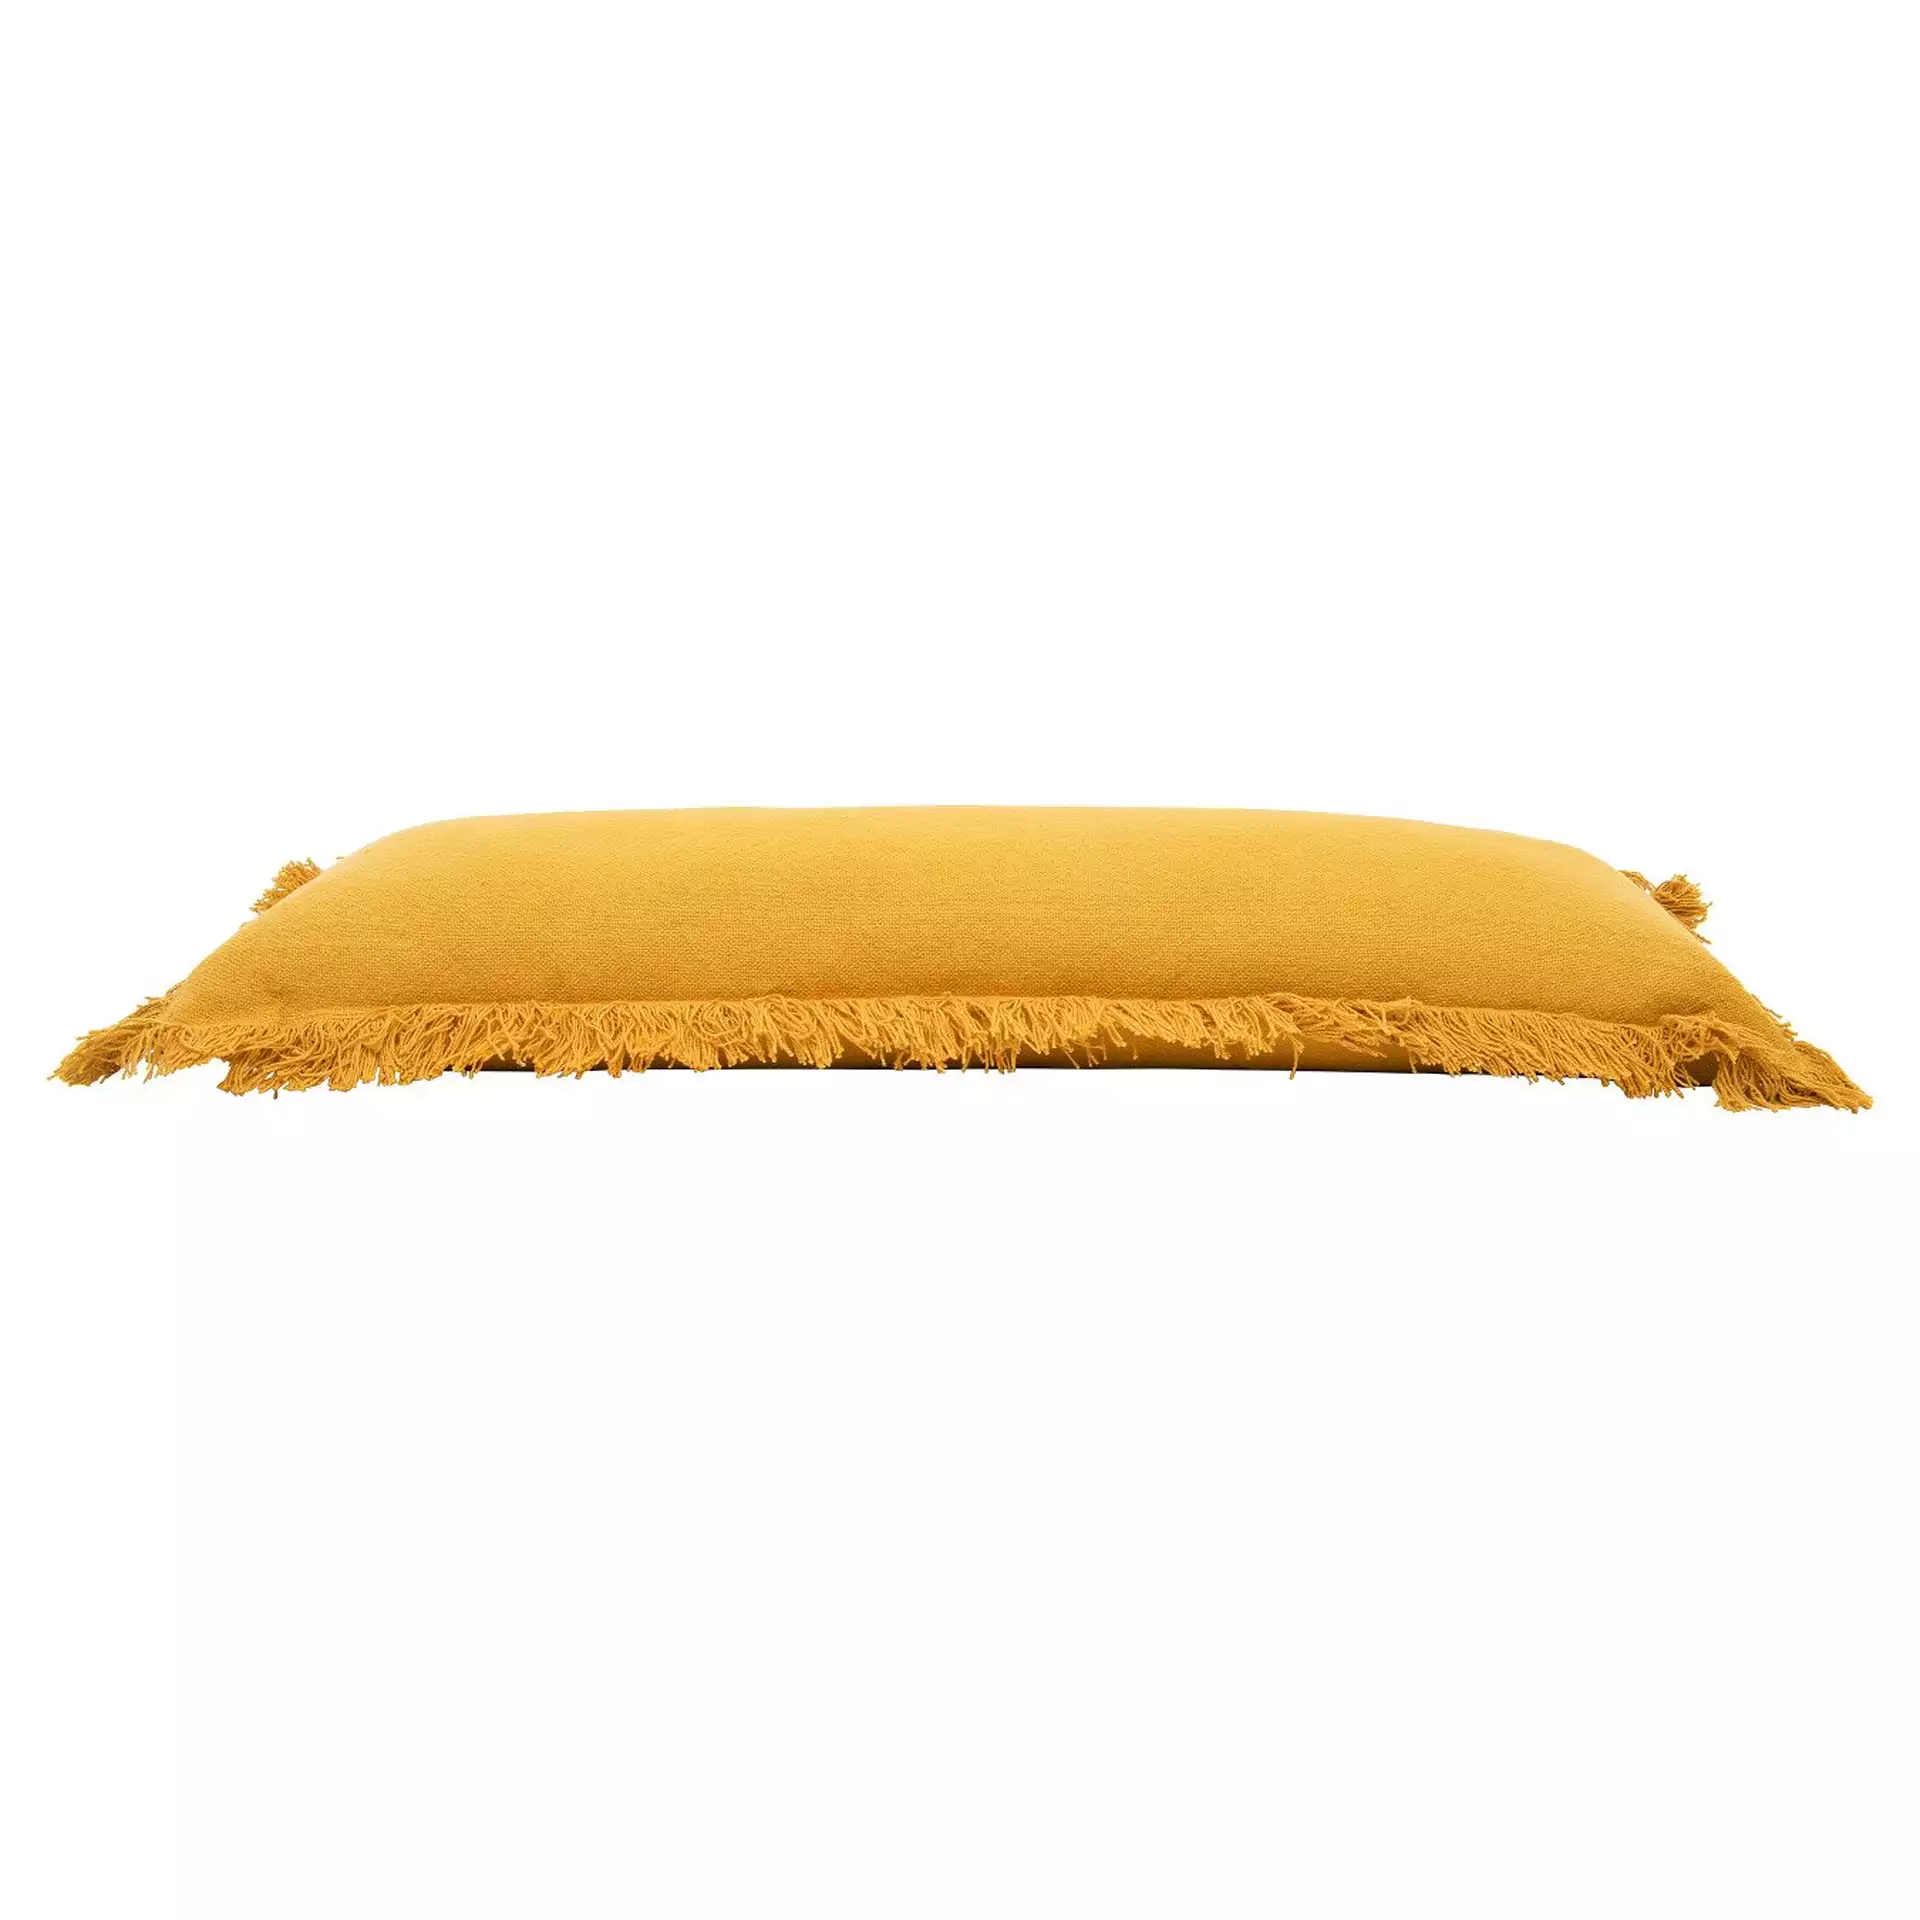 Rectangle Lumbar Pillow with Fringe, Mustard Cotton, 36" x 14"